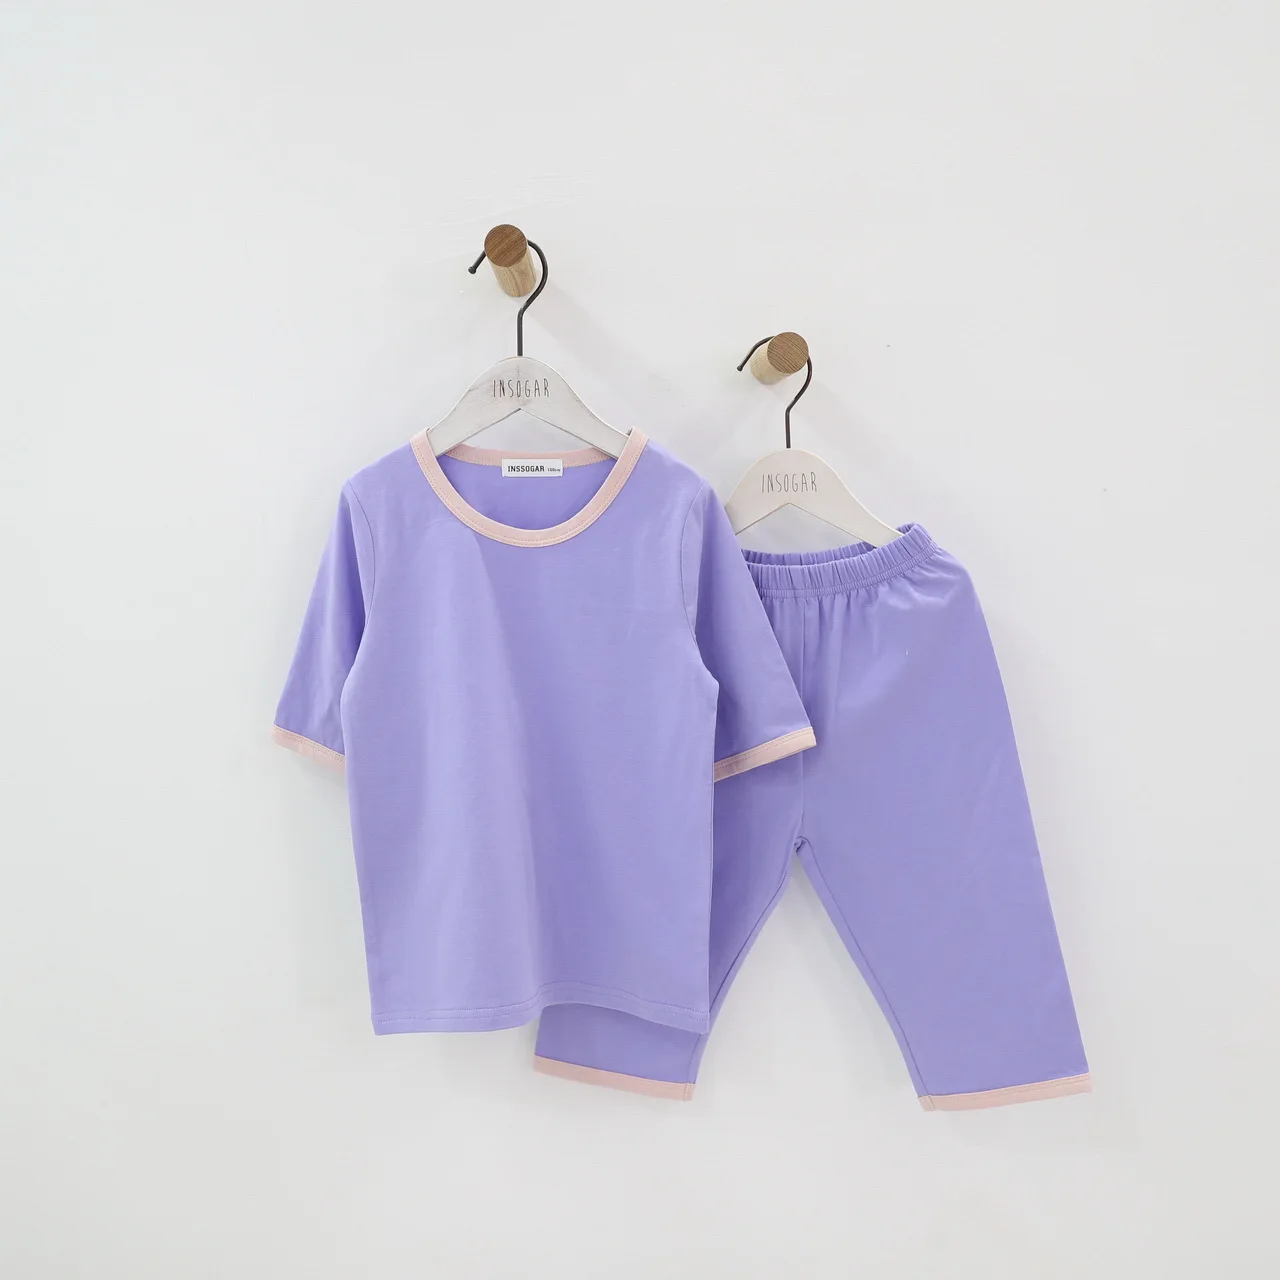 Детская одежда для мальчиков и девочек, хлопковые пижамы, комплект детской одежды, 12 мес., 18 мес., 24 мес., 2 3 4 5 6 7 8 От 9 до 15 лет летние тонкие одежда для малышей - Цвет: Фиолетовый